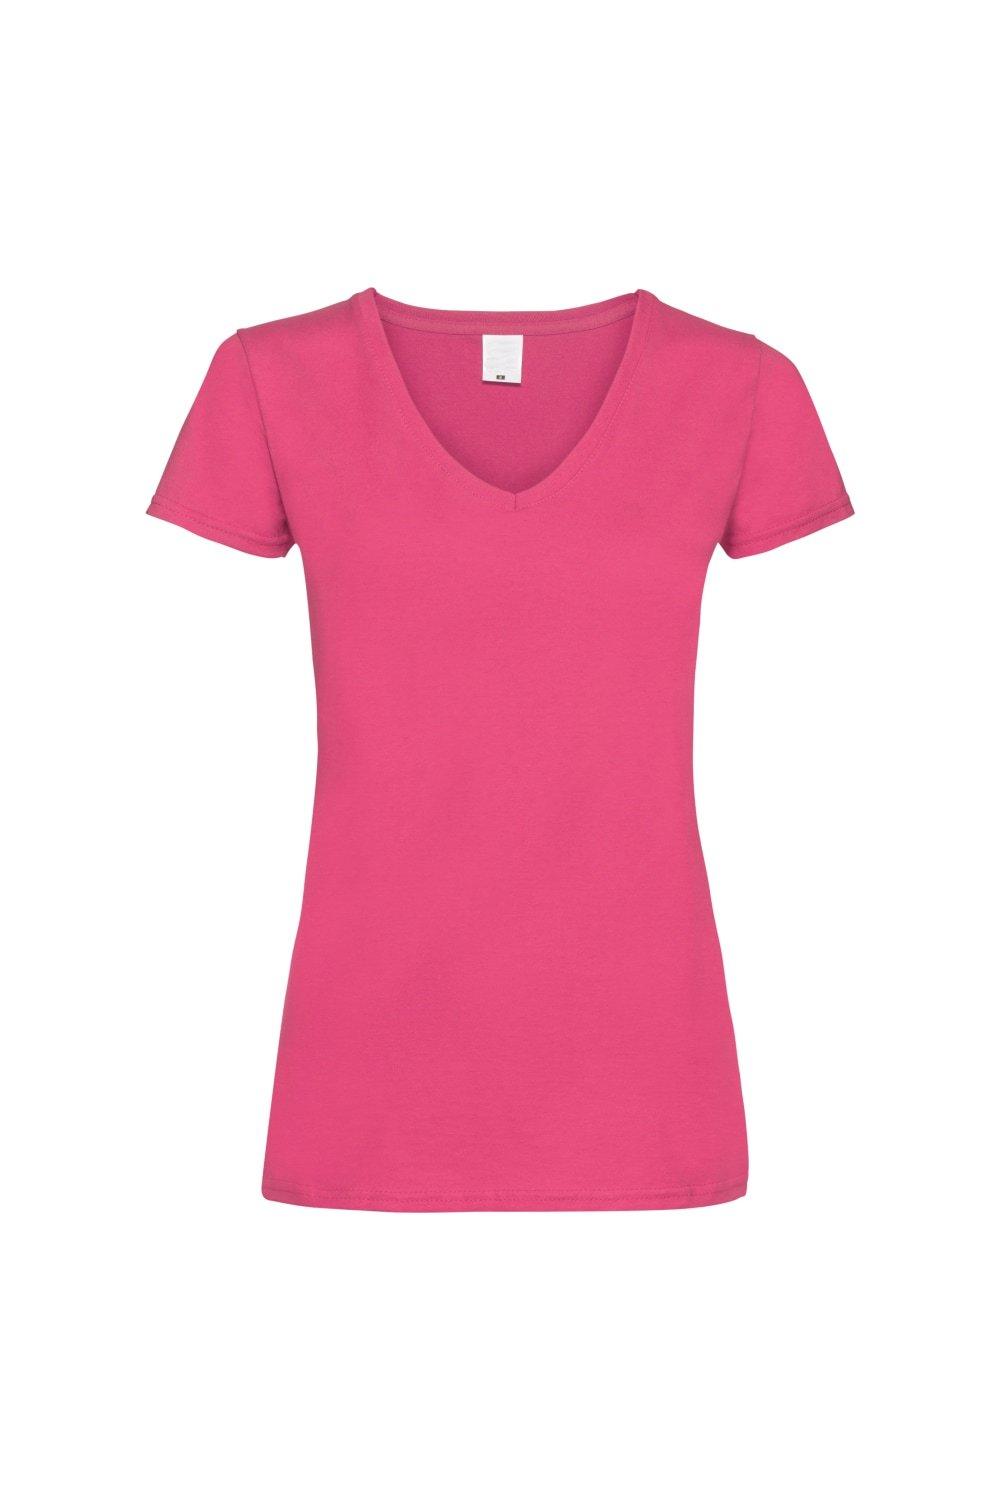 Повседневная футболка Value с V-образным вырезом и короткими рукавами Universal Textiles, розовый футболка женская mia серый меланж размер xl